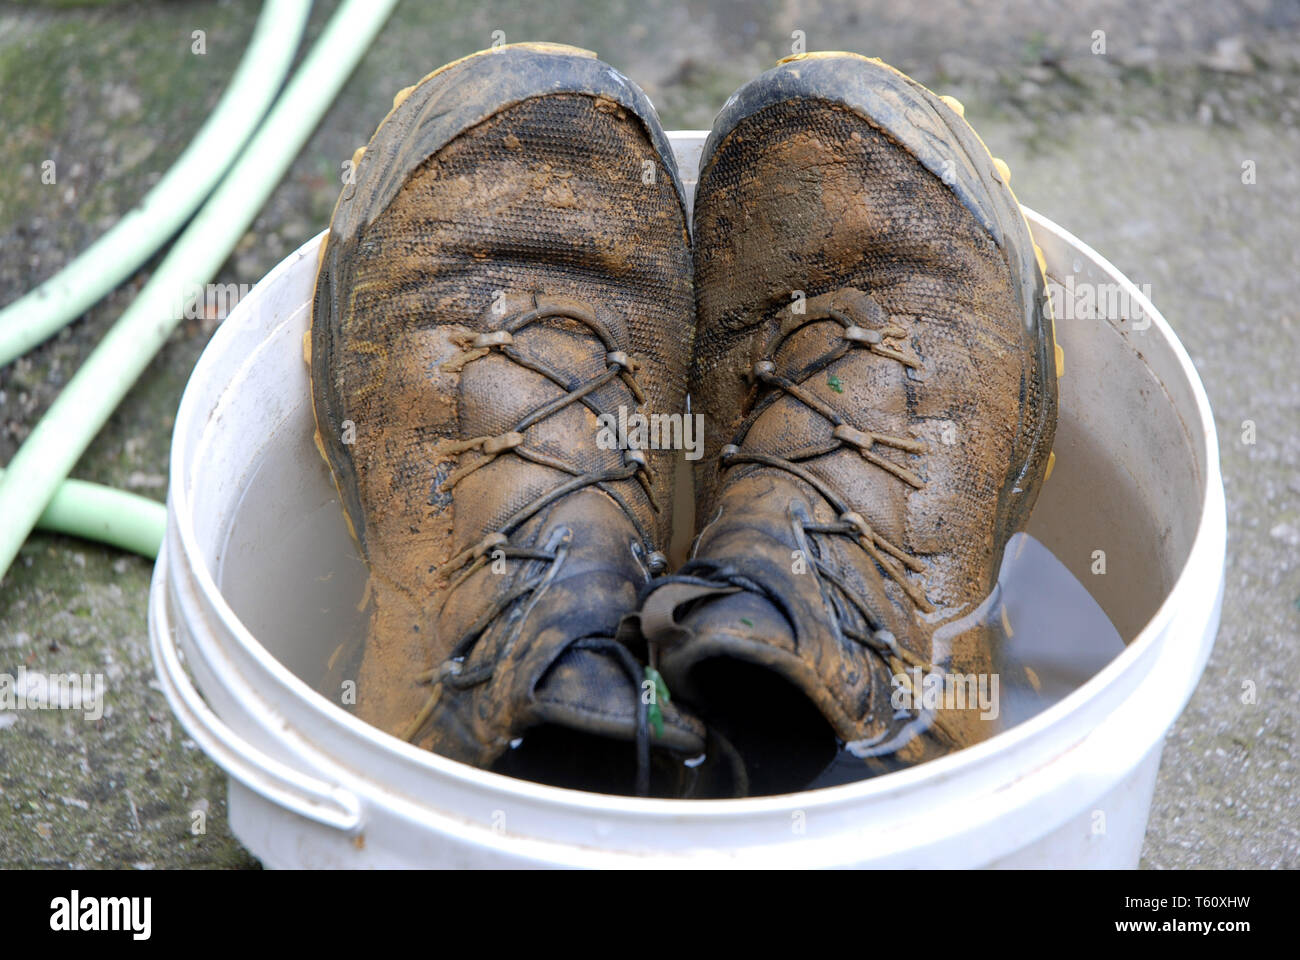 Schuhe der ultramarathonläufer Giuseppe De Rosa am Ende der letzten  Enterprise in einen Eimer voll Wasser der Schlamm aus dem Vietnam zu  entfernen beendet Stockfotografie - Alamy